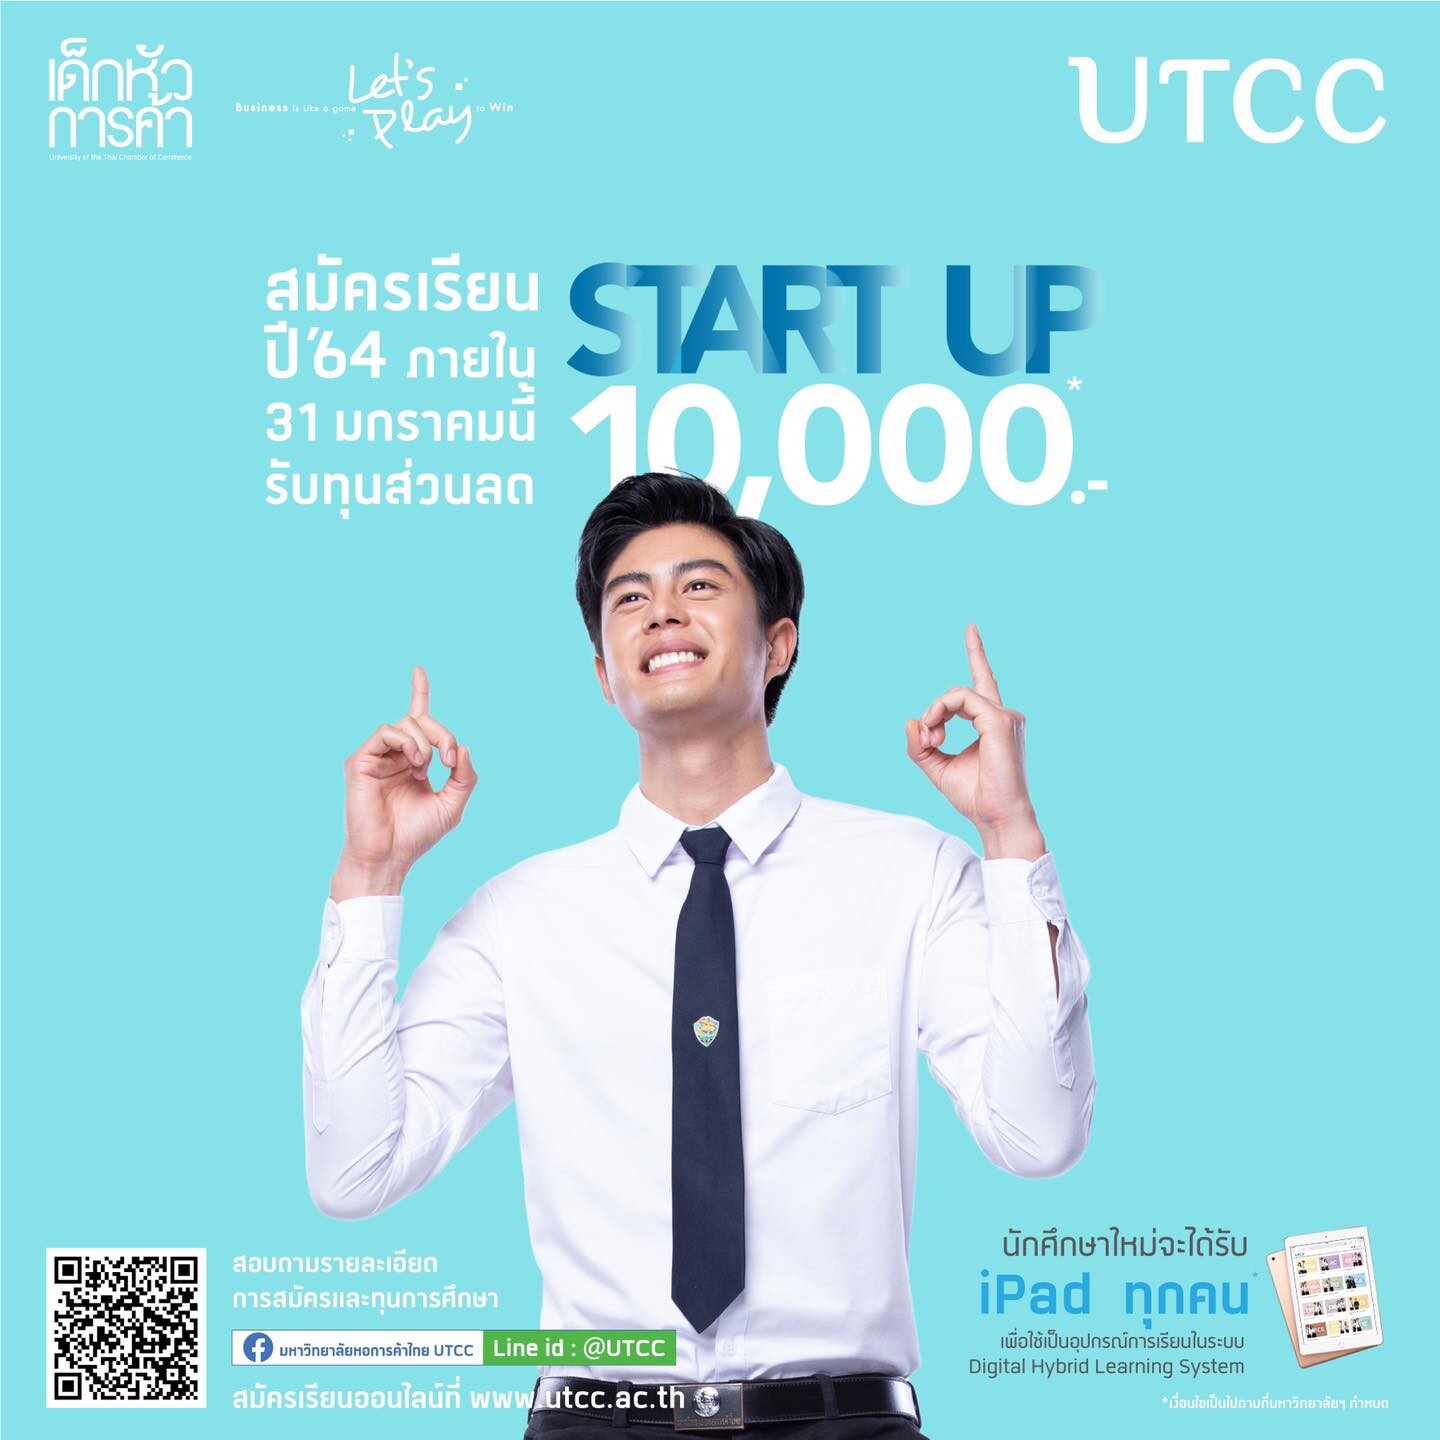 มหาวิทยาลัยหอการค้าไทย มอบทุน START UP ส่วนลดค่าเล่าเรียน มูลค่า 10,000 บาท